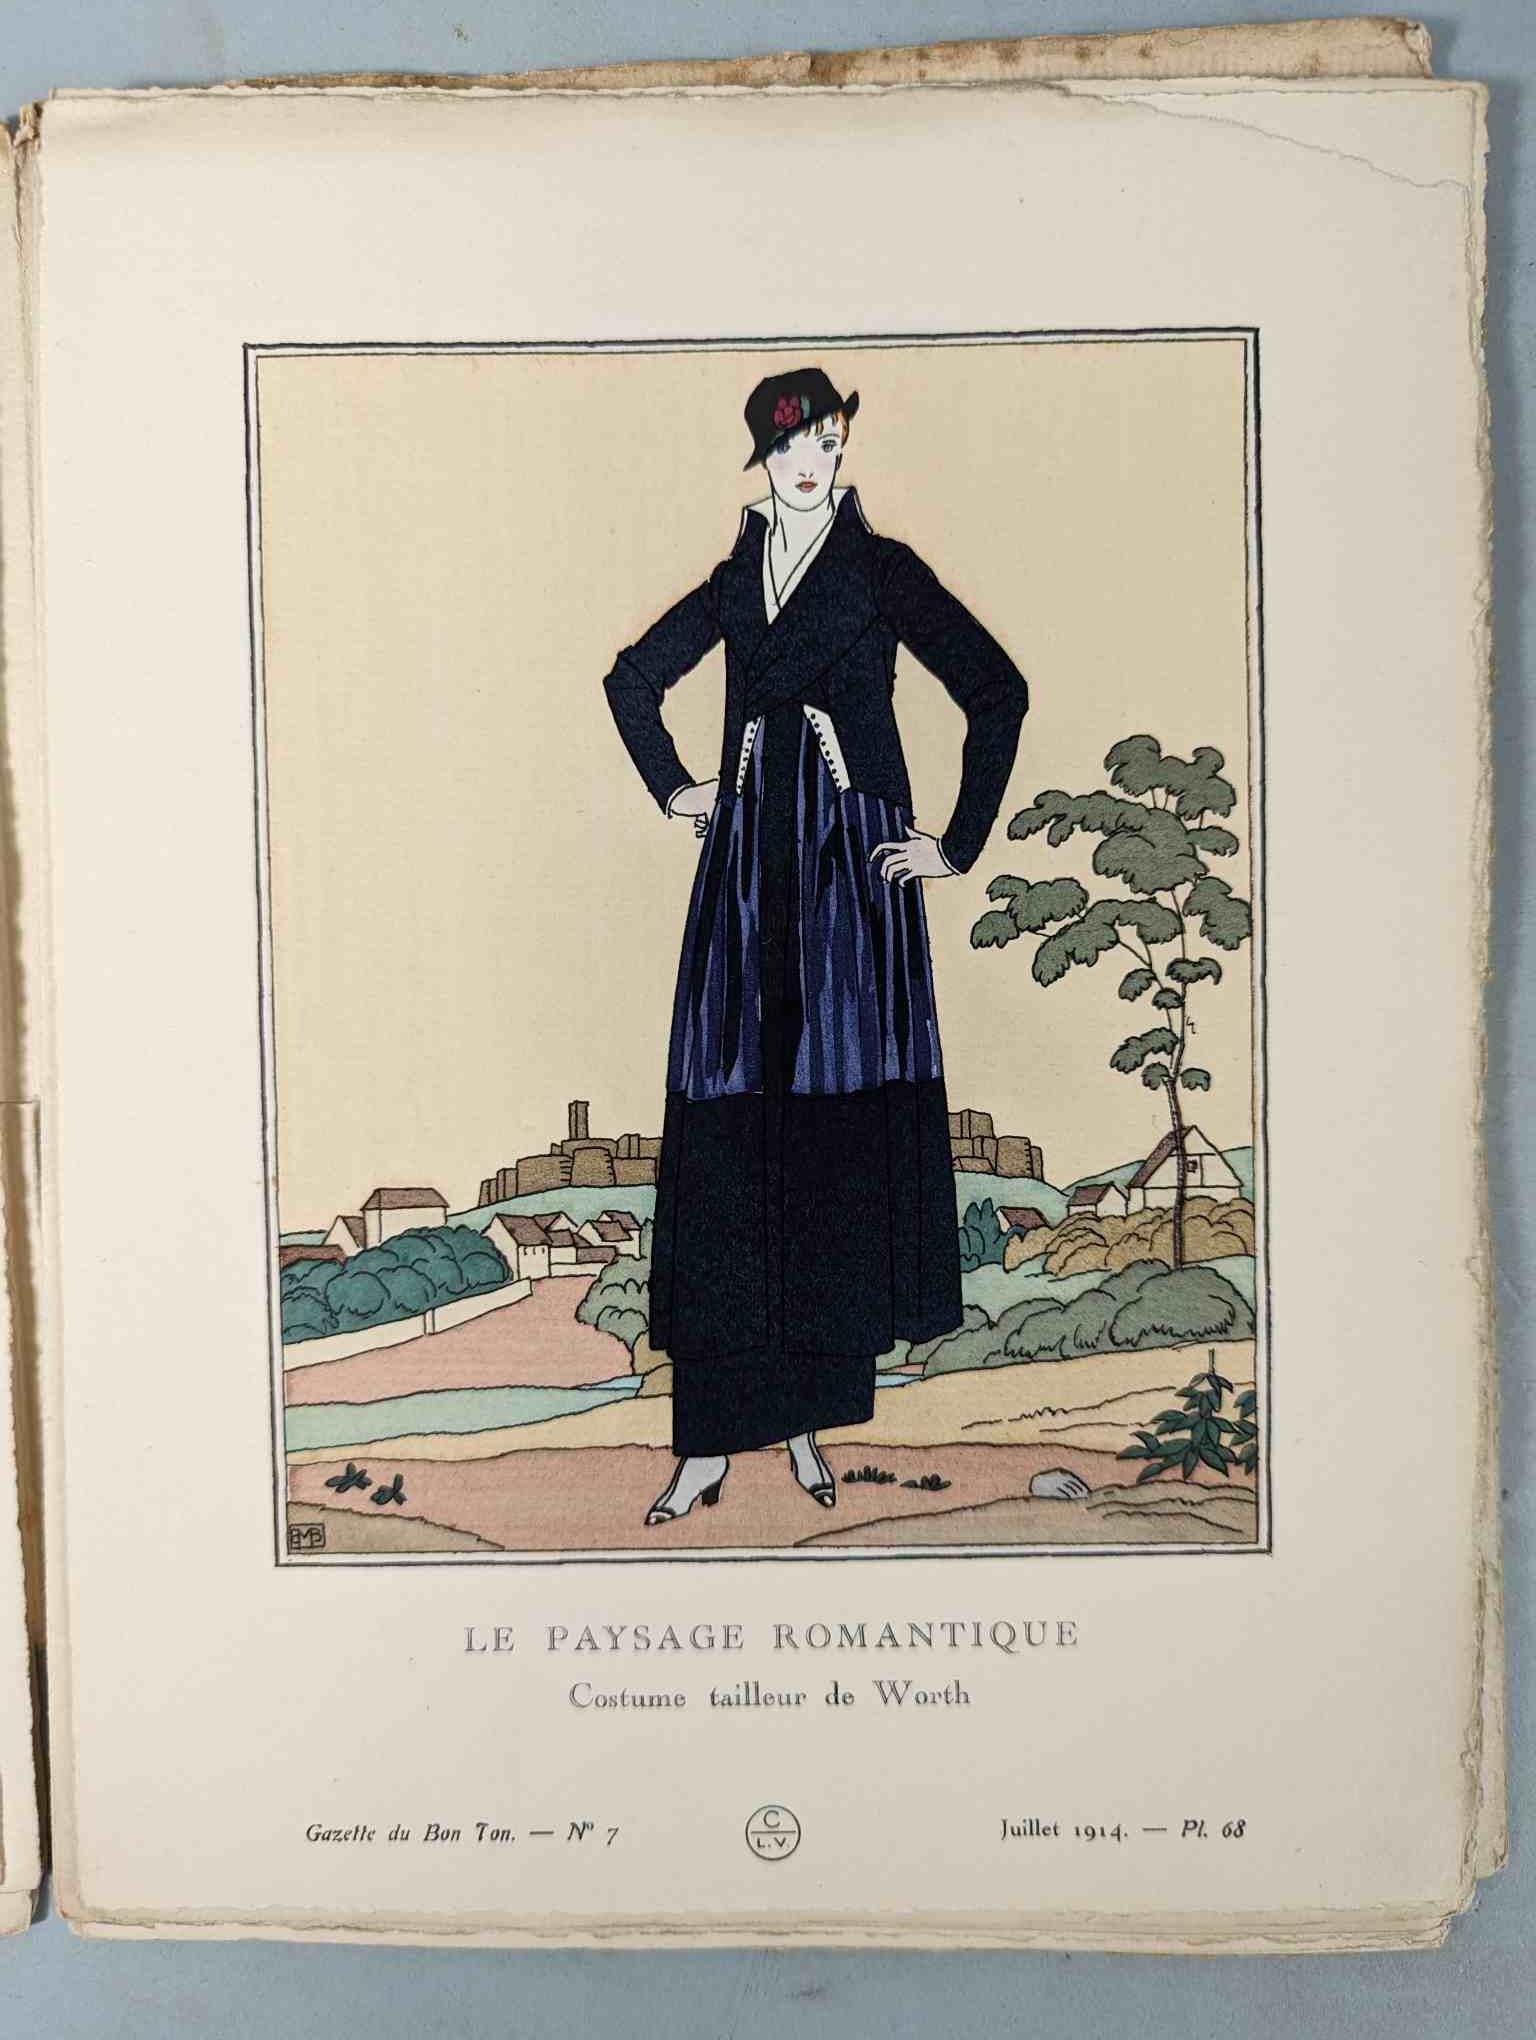 FASHION. VOGEL, Lucien. GAZETTE DU BON TON: Art-Modes & Frivolités, Paris 1913-14, 4 vol. - Image 44 of 54